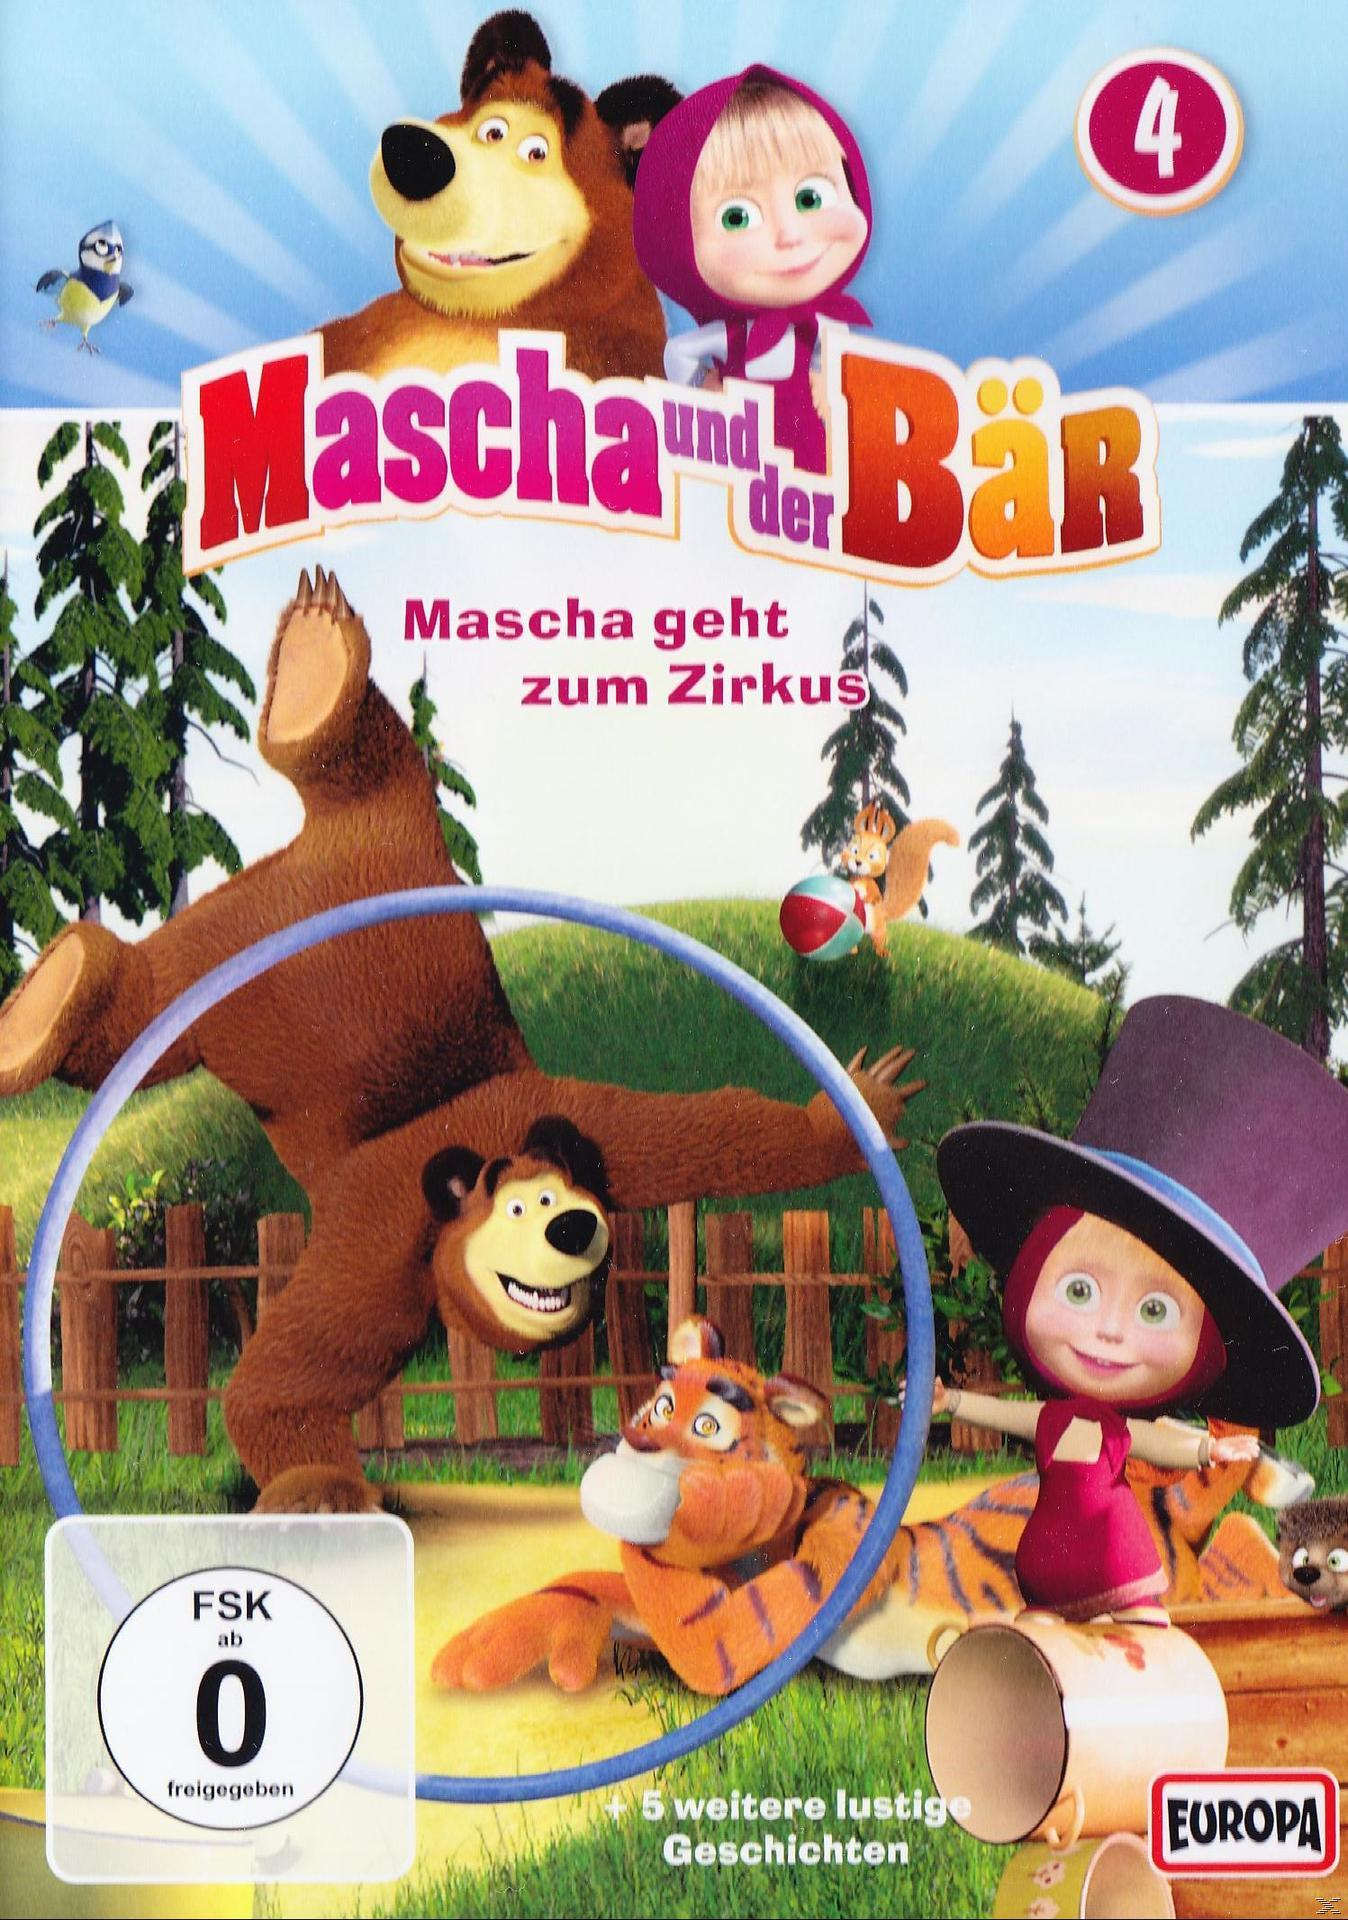 Bär, 4 DVD Vol. und der Mascha